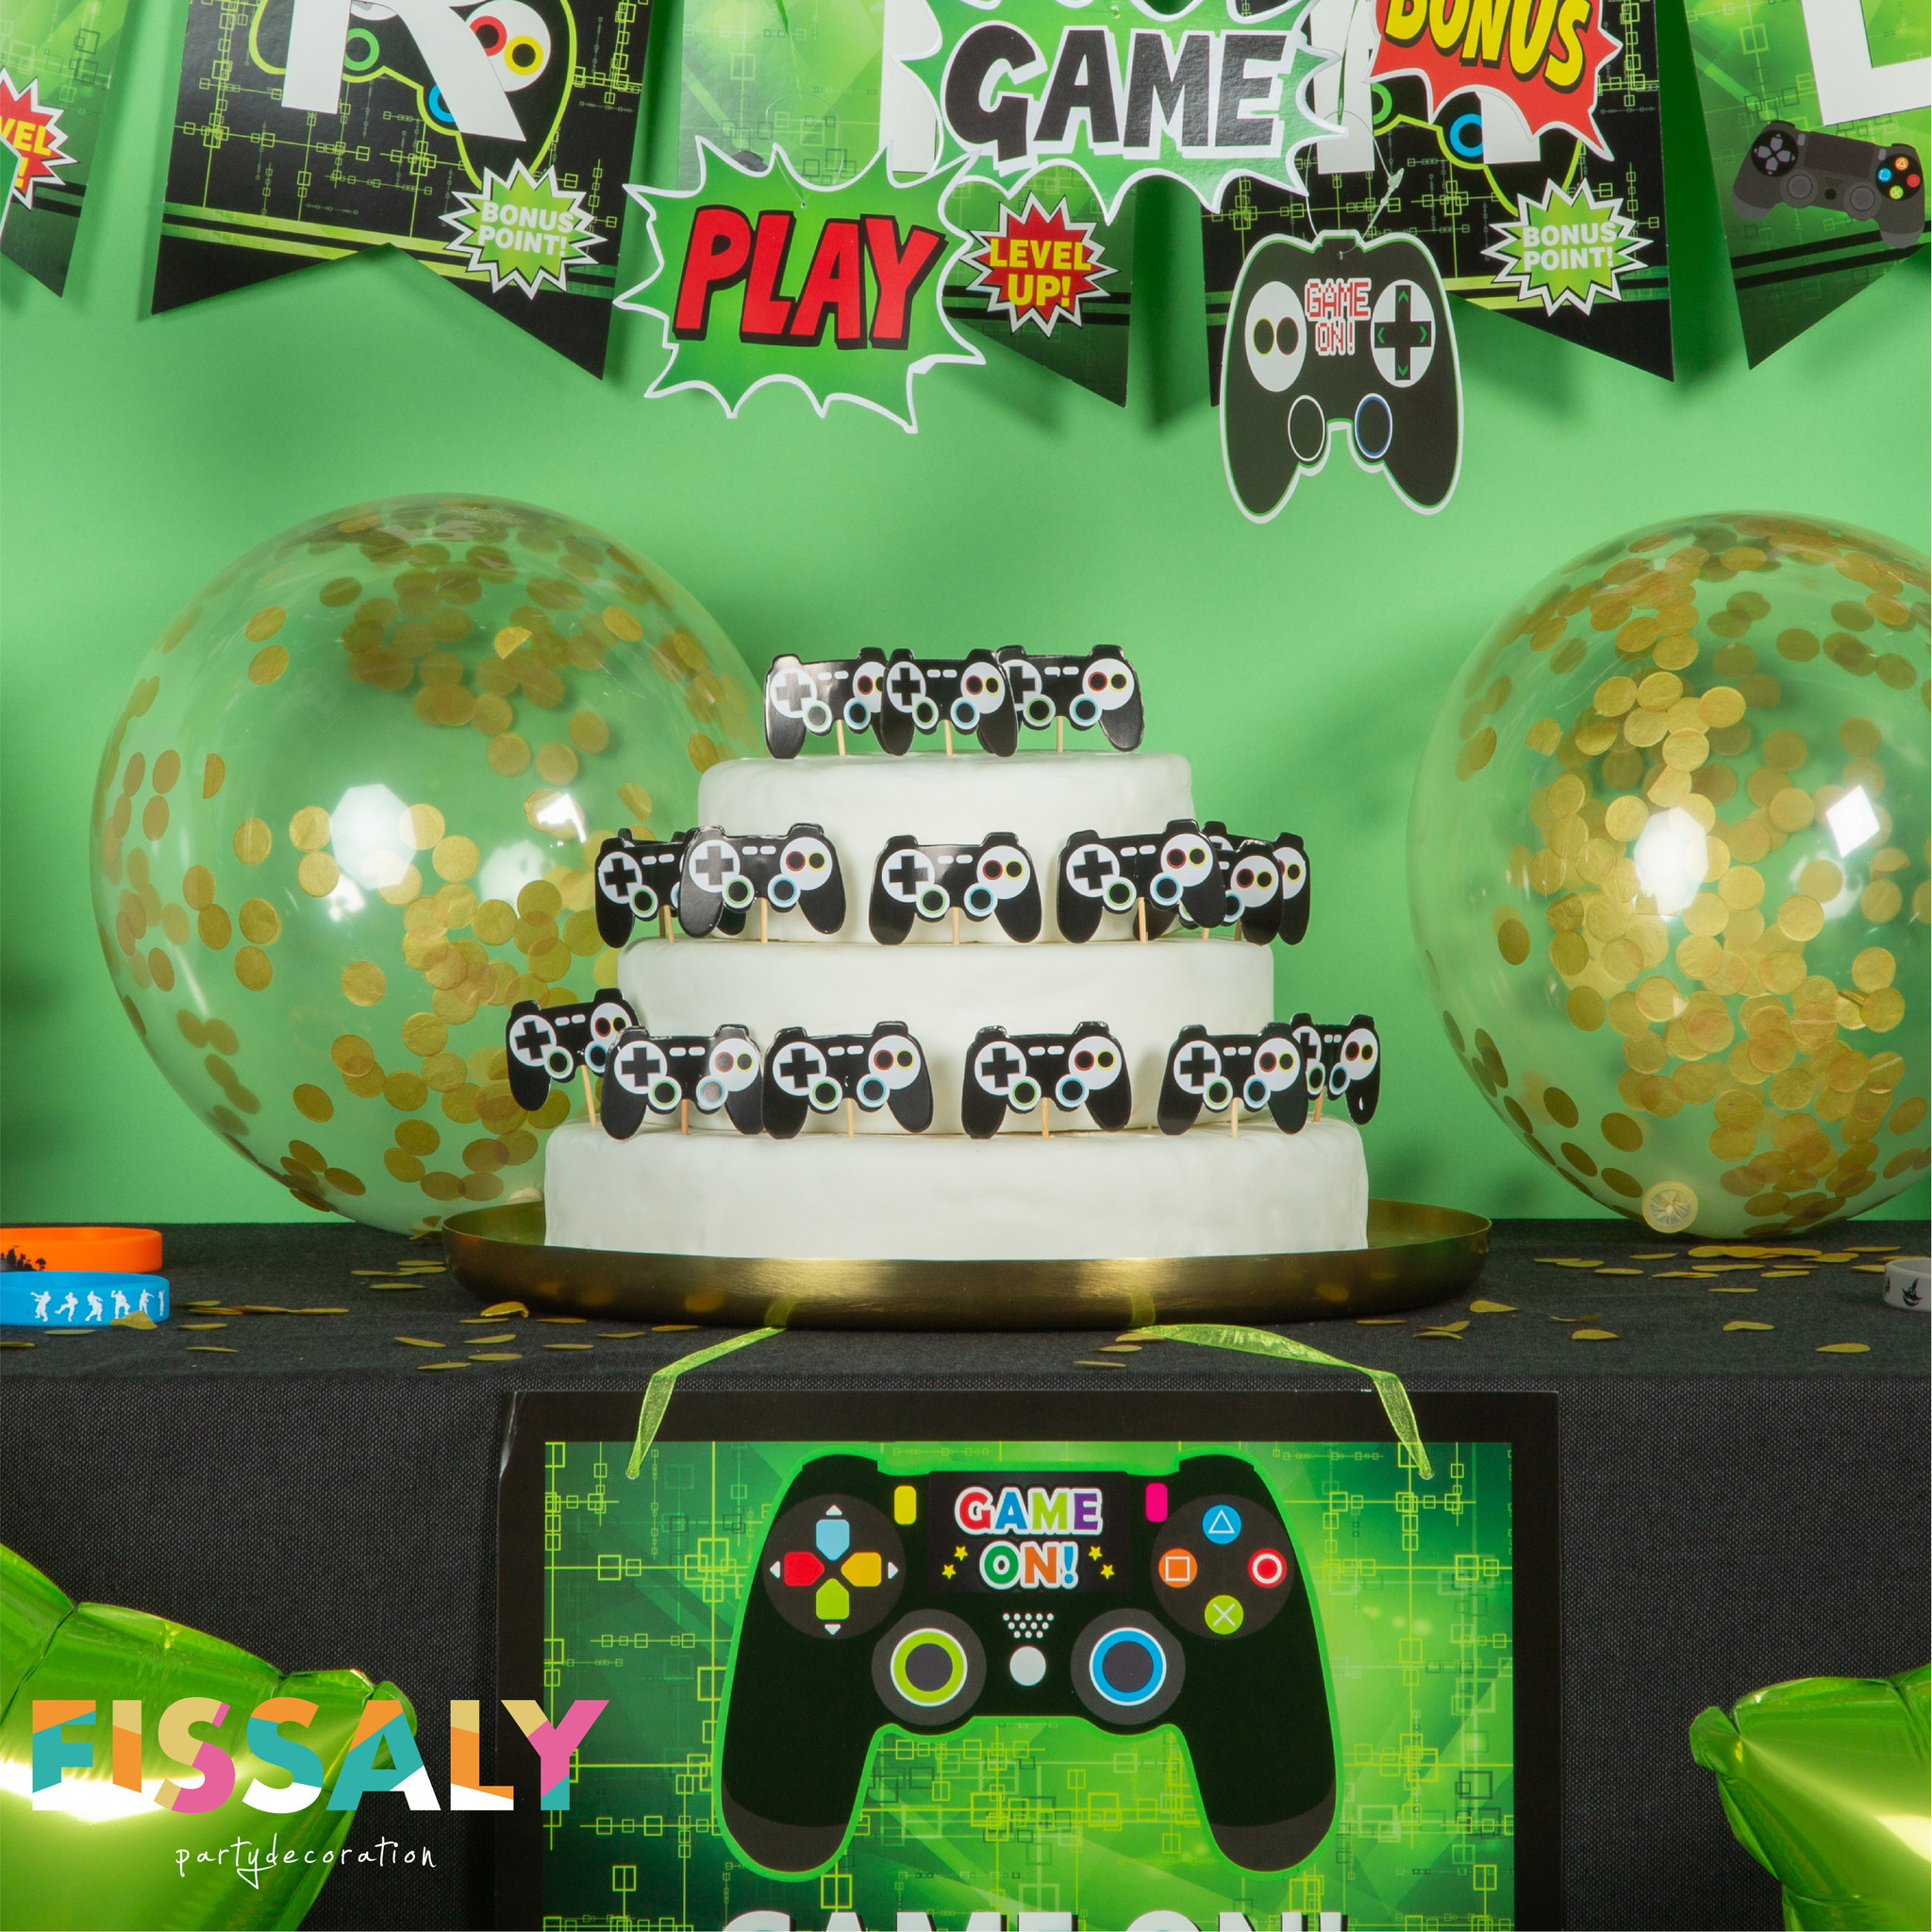 Fissaly® Stuks Video Game Verjaardag Versiering met Ballonnen - Fissaly